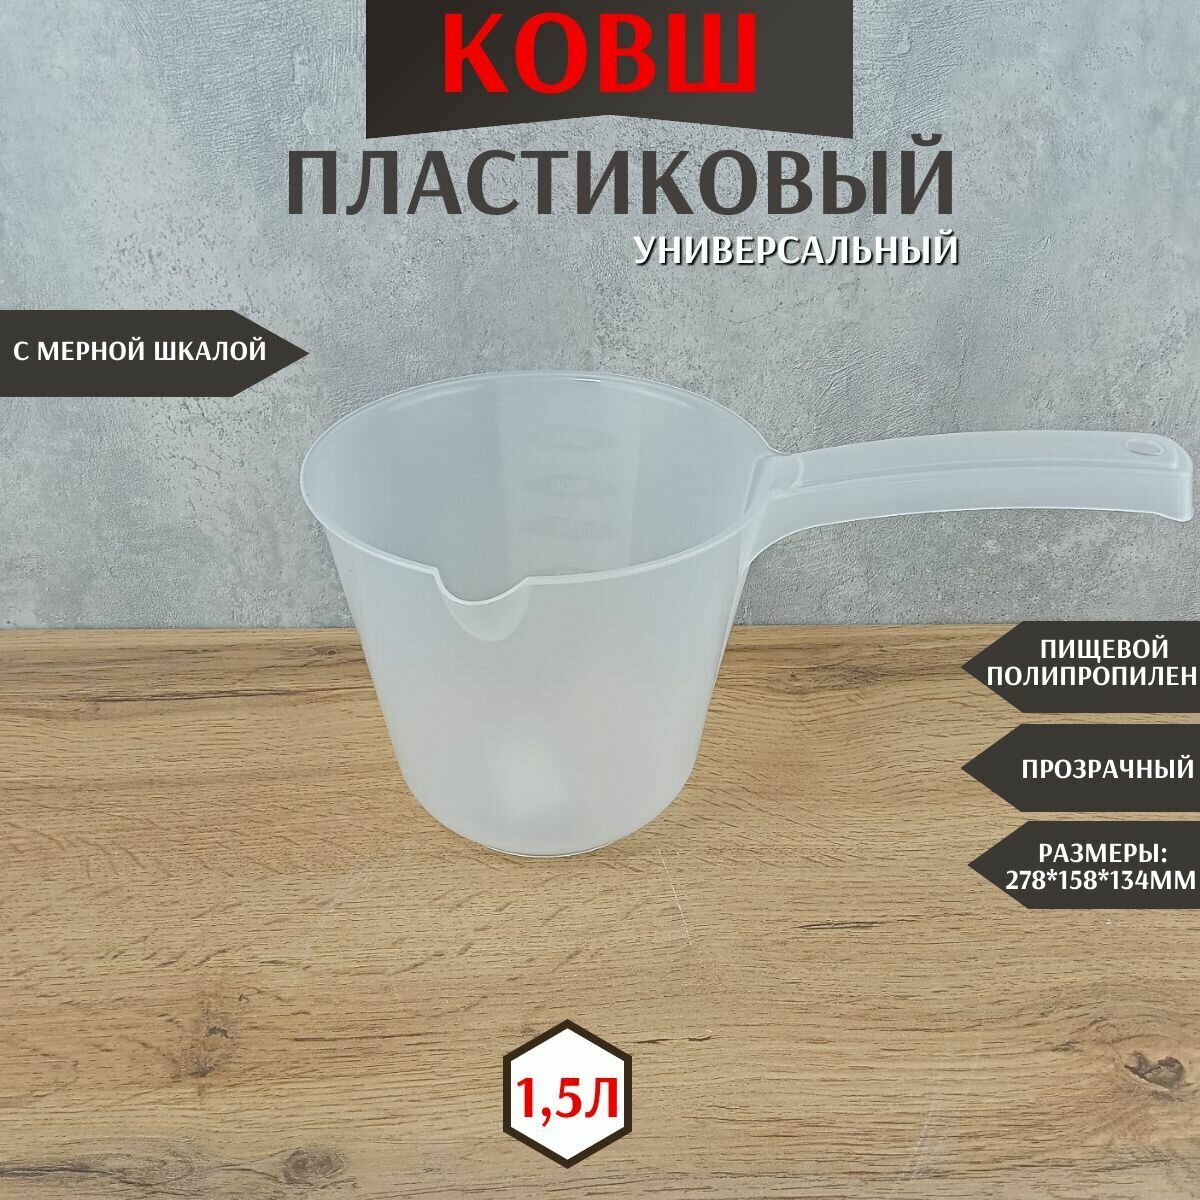 Ковш пластиковый с мерной шкалой для бани дачи кухонный для купания